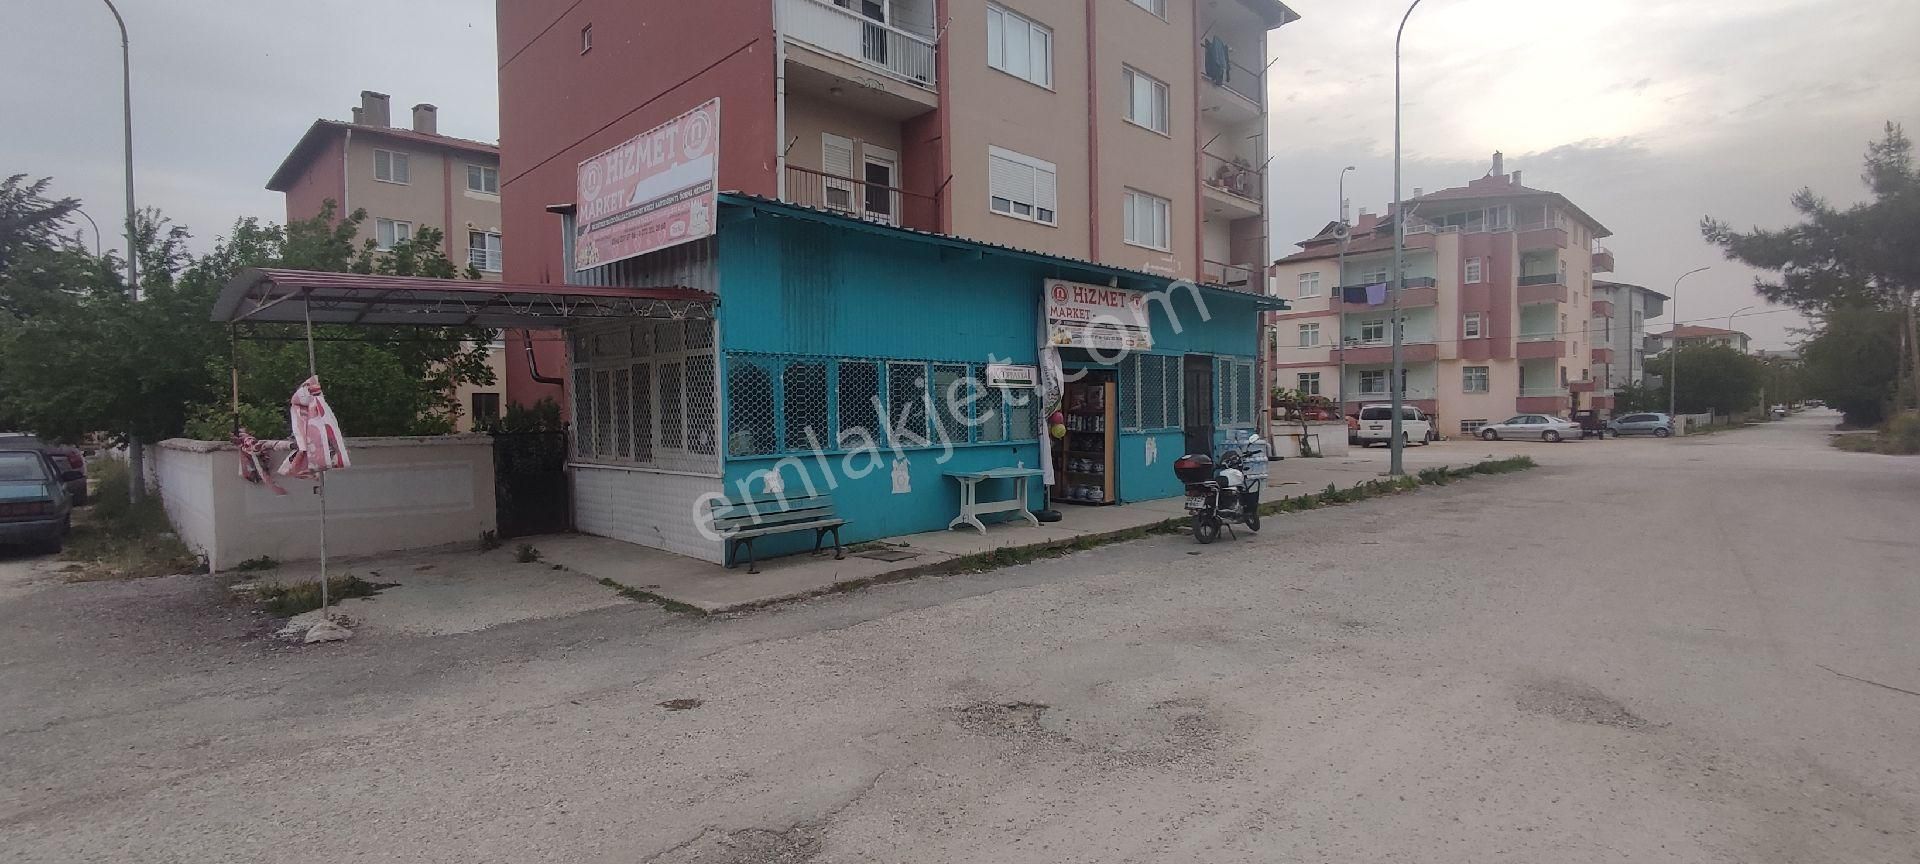 Dinar Pancar Satılık Dükkan & Mağaza devren satılık bakkal